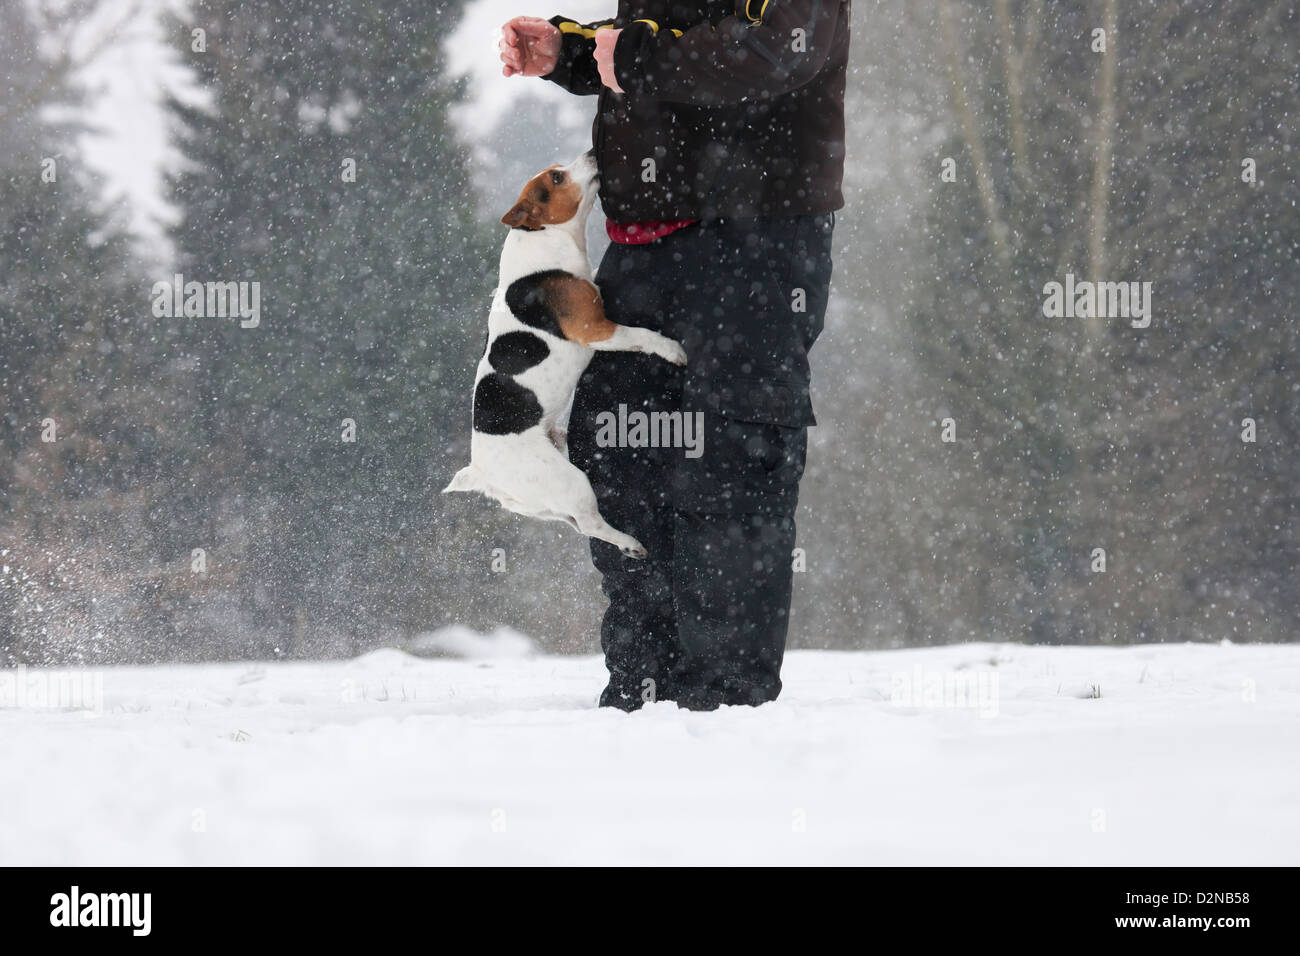 Jack Russell terrier perro saltando contra el propietario en la nieve durante las nevadas en invierno Foto de stock